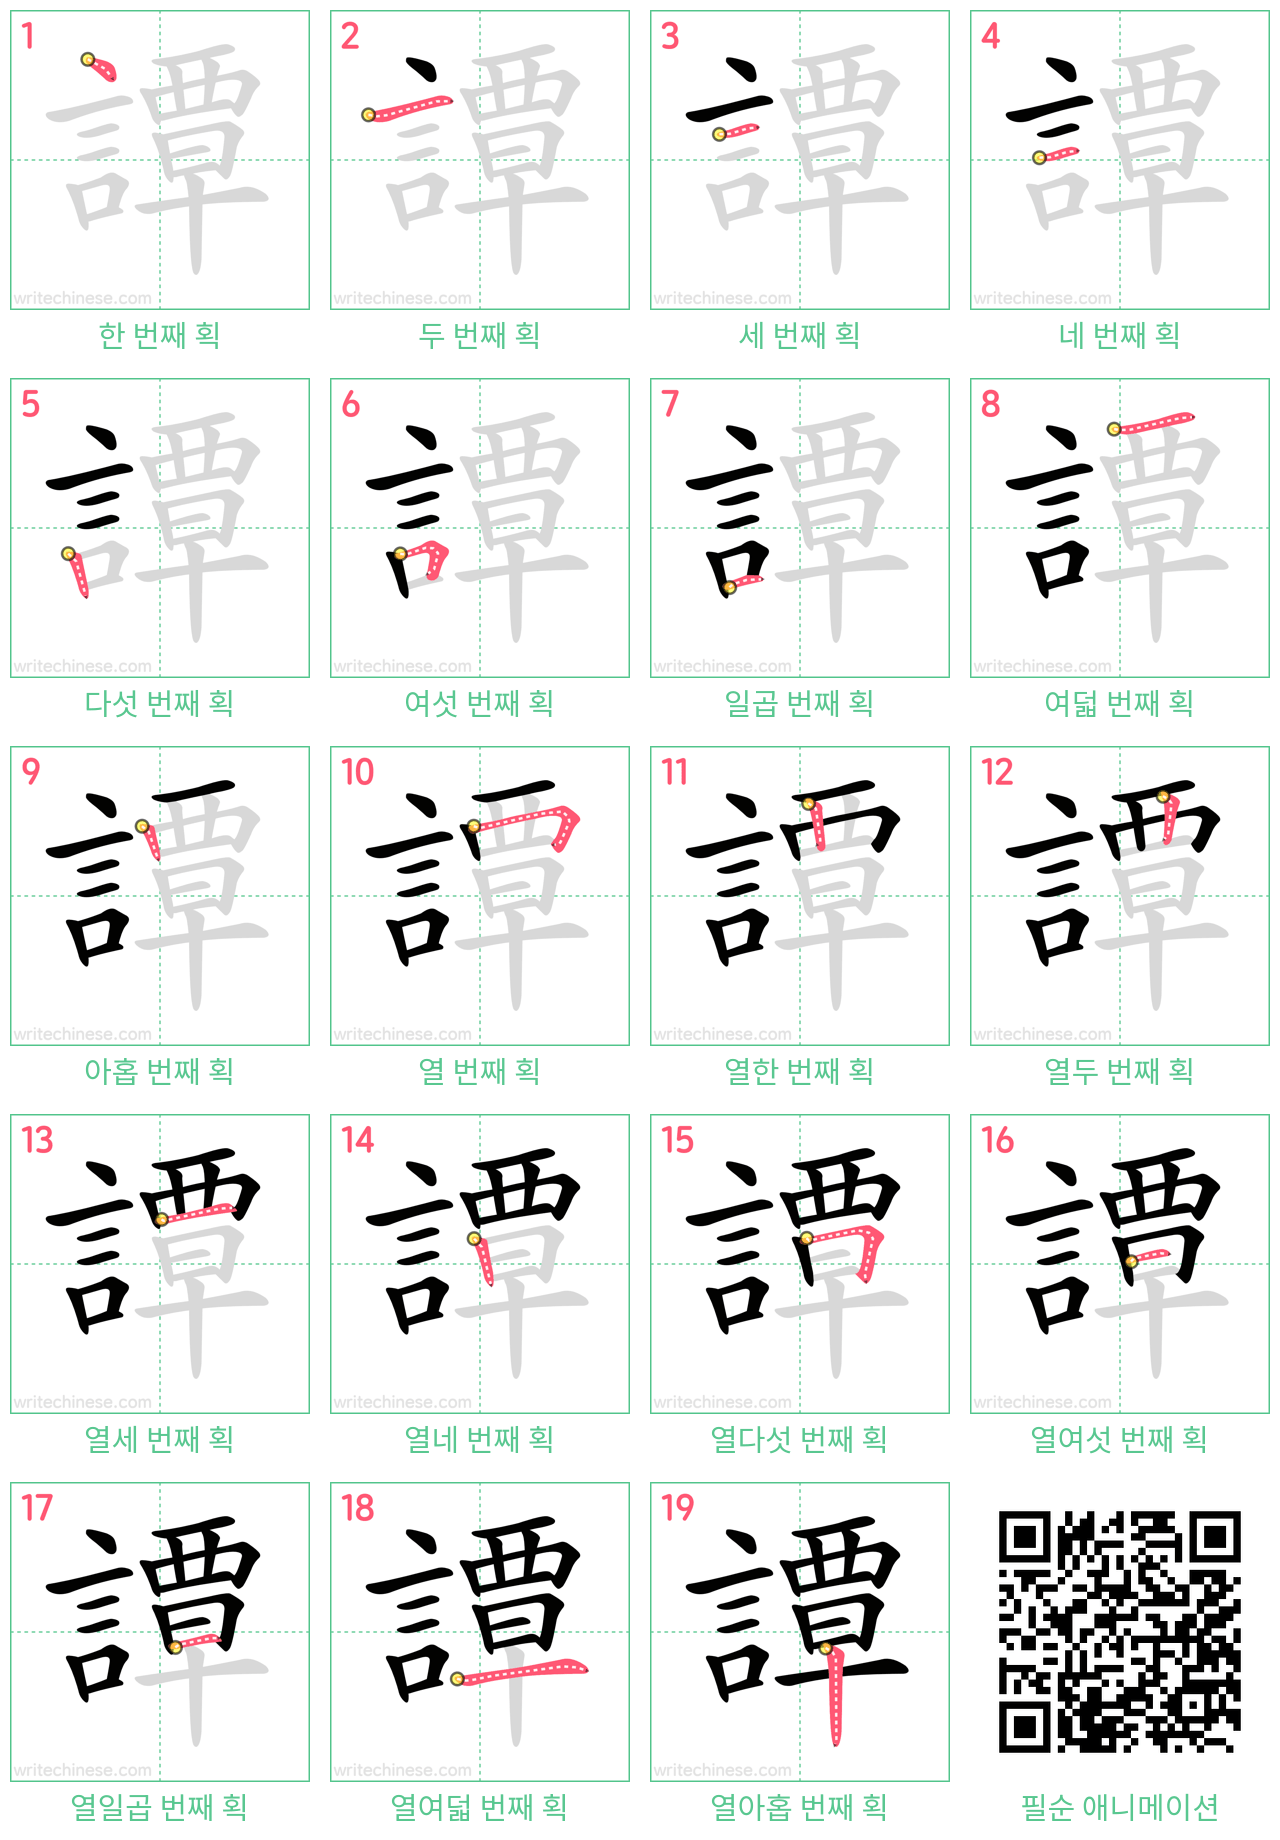 譚 step-by-step stroke order diagrams